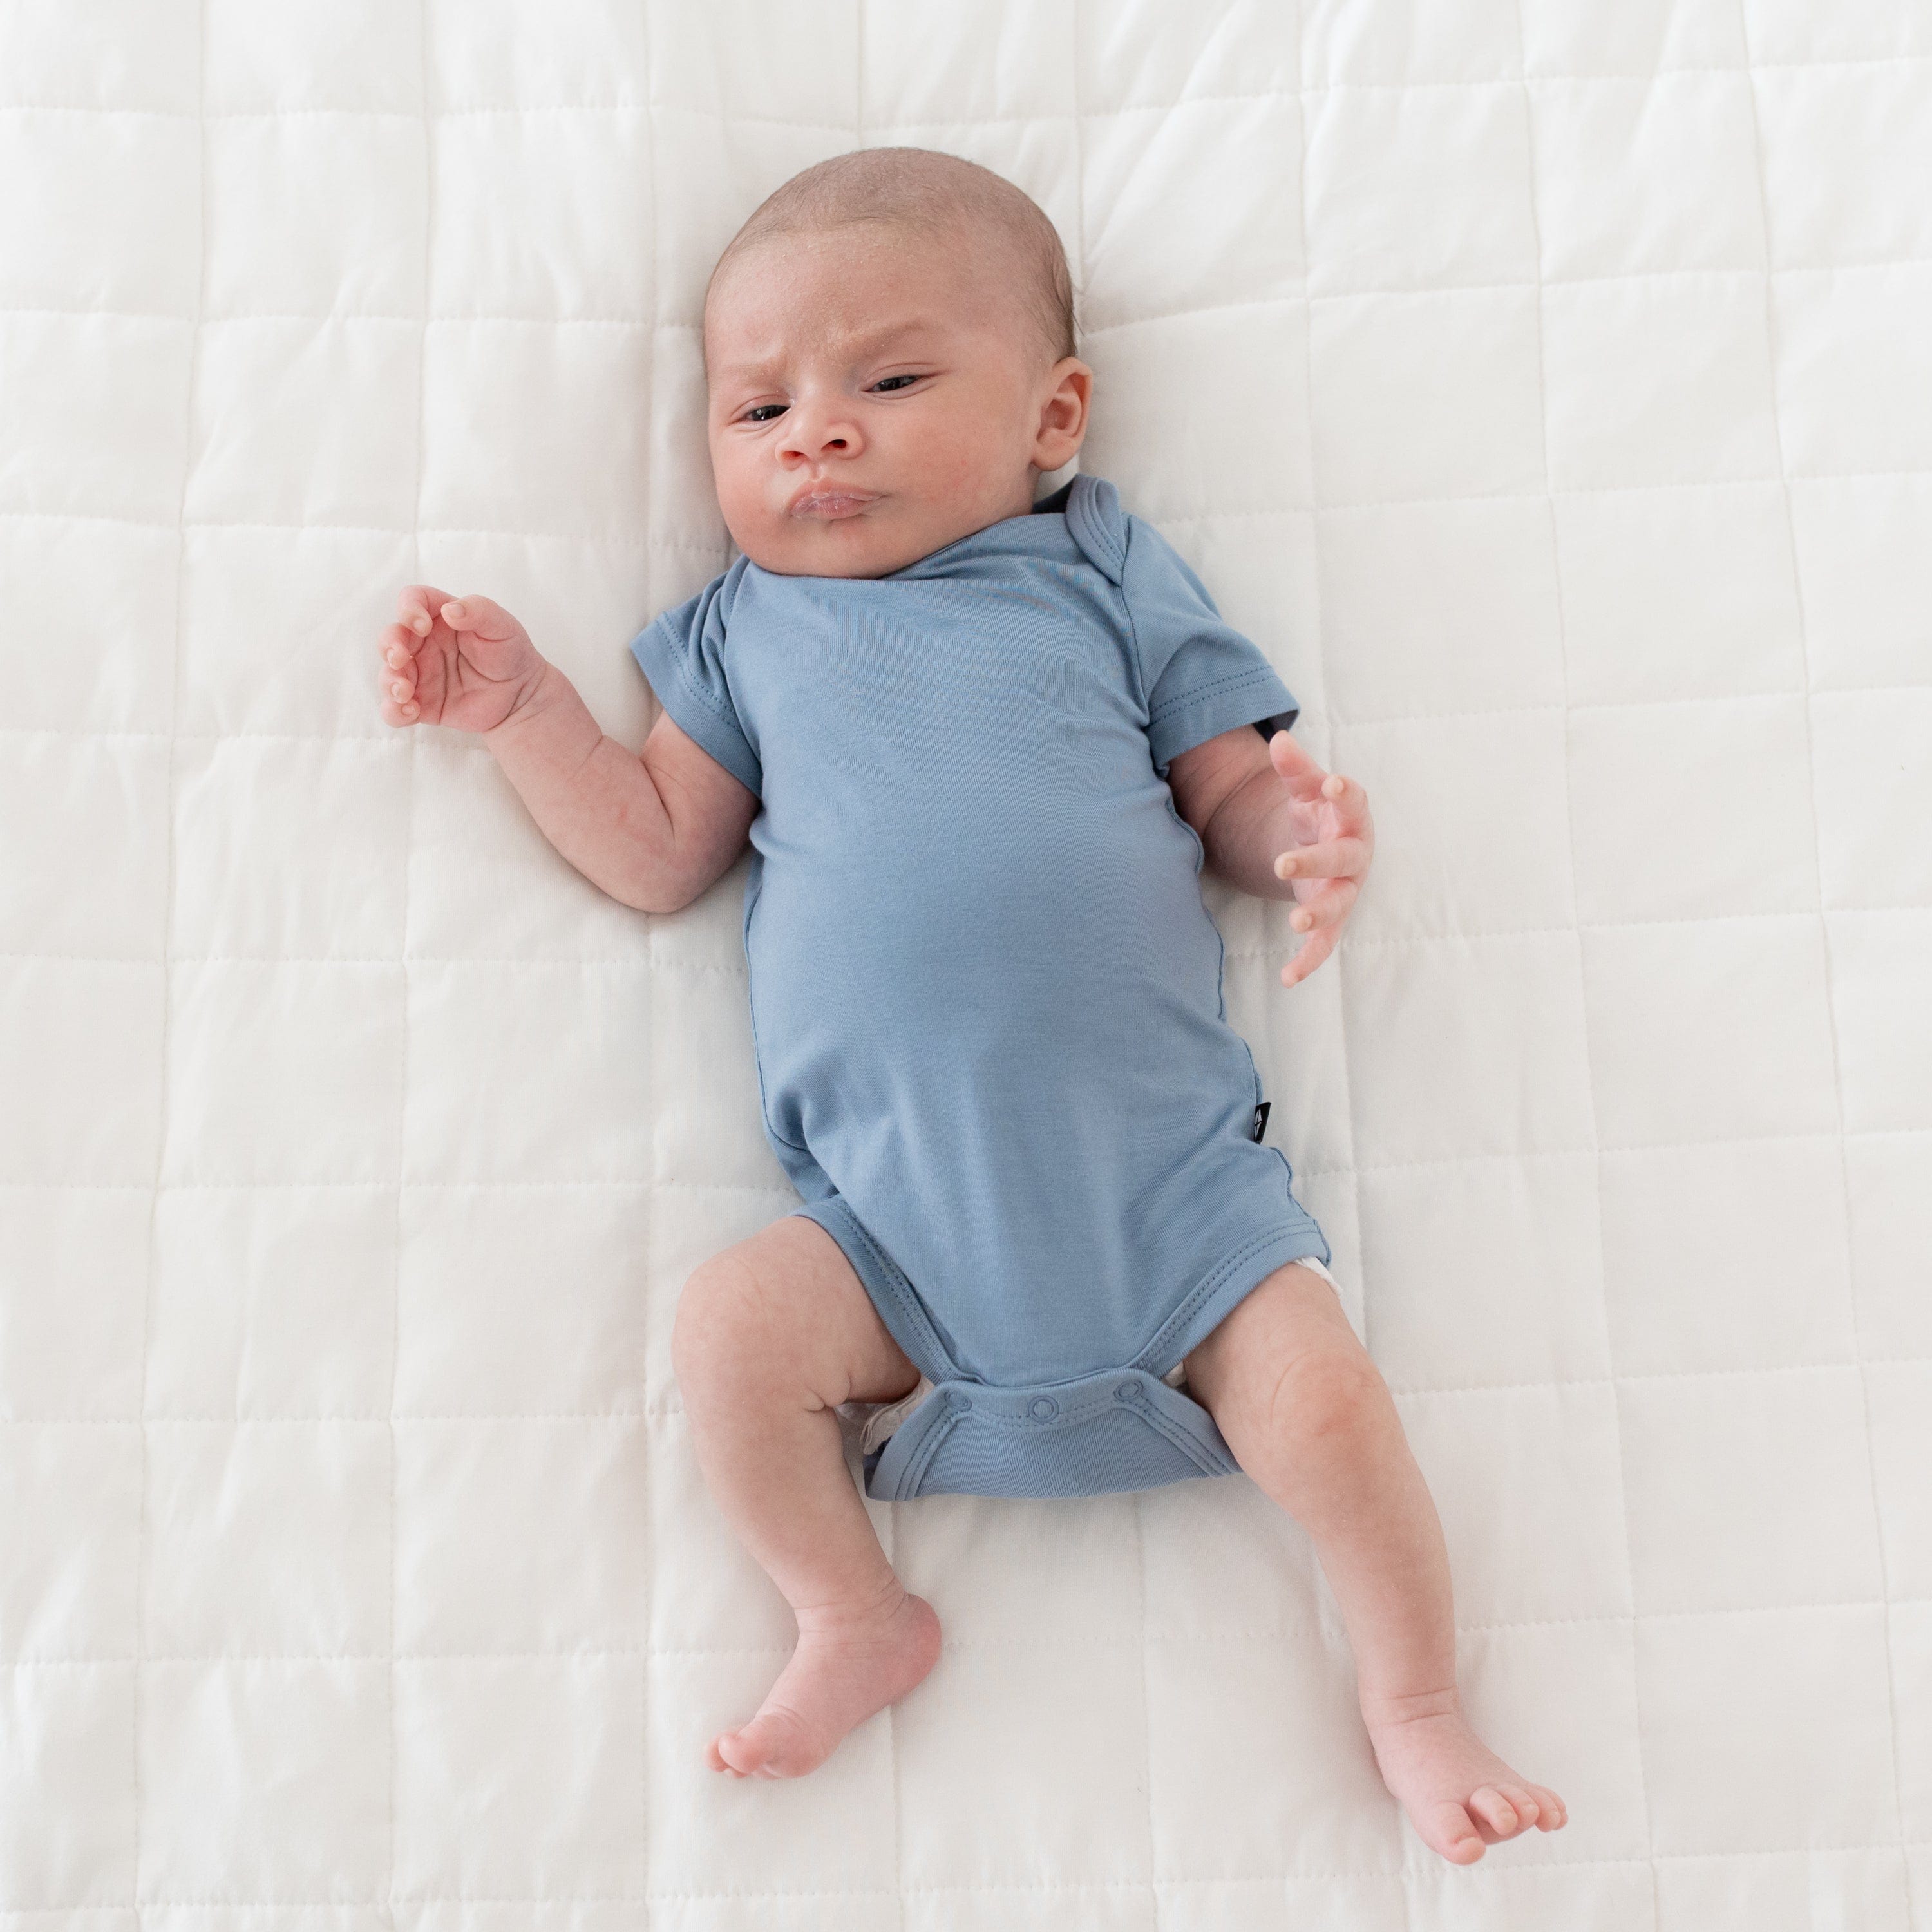 Baby wearing Kyte Baby infant Bodysuit in Slate